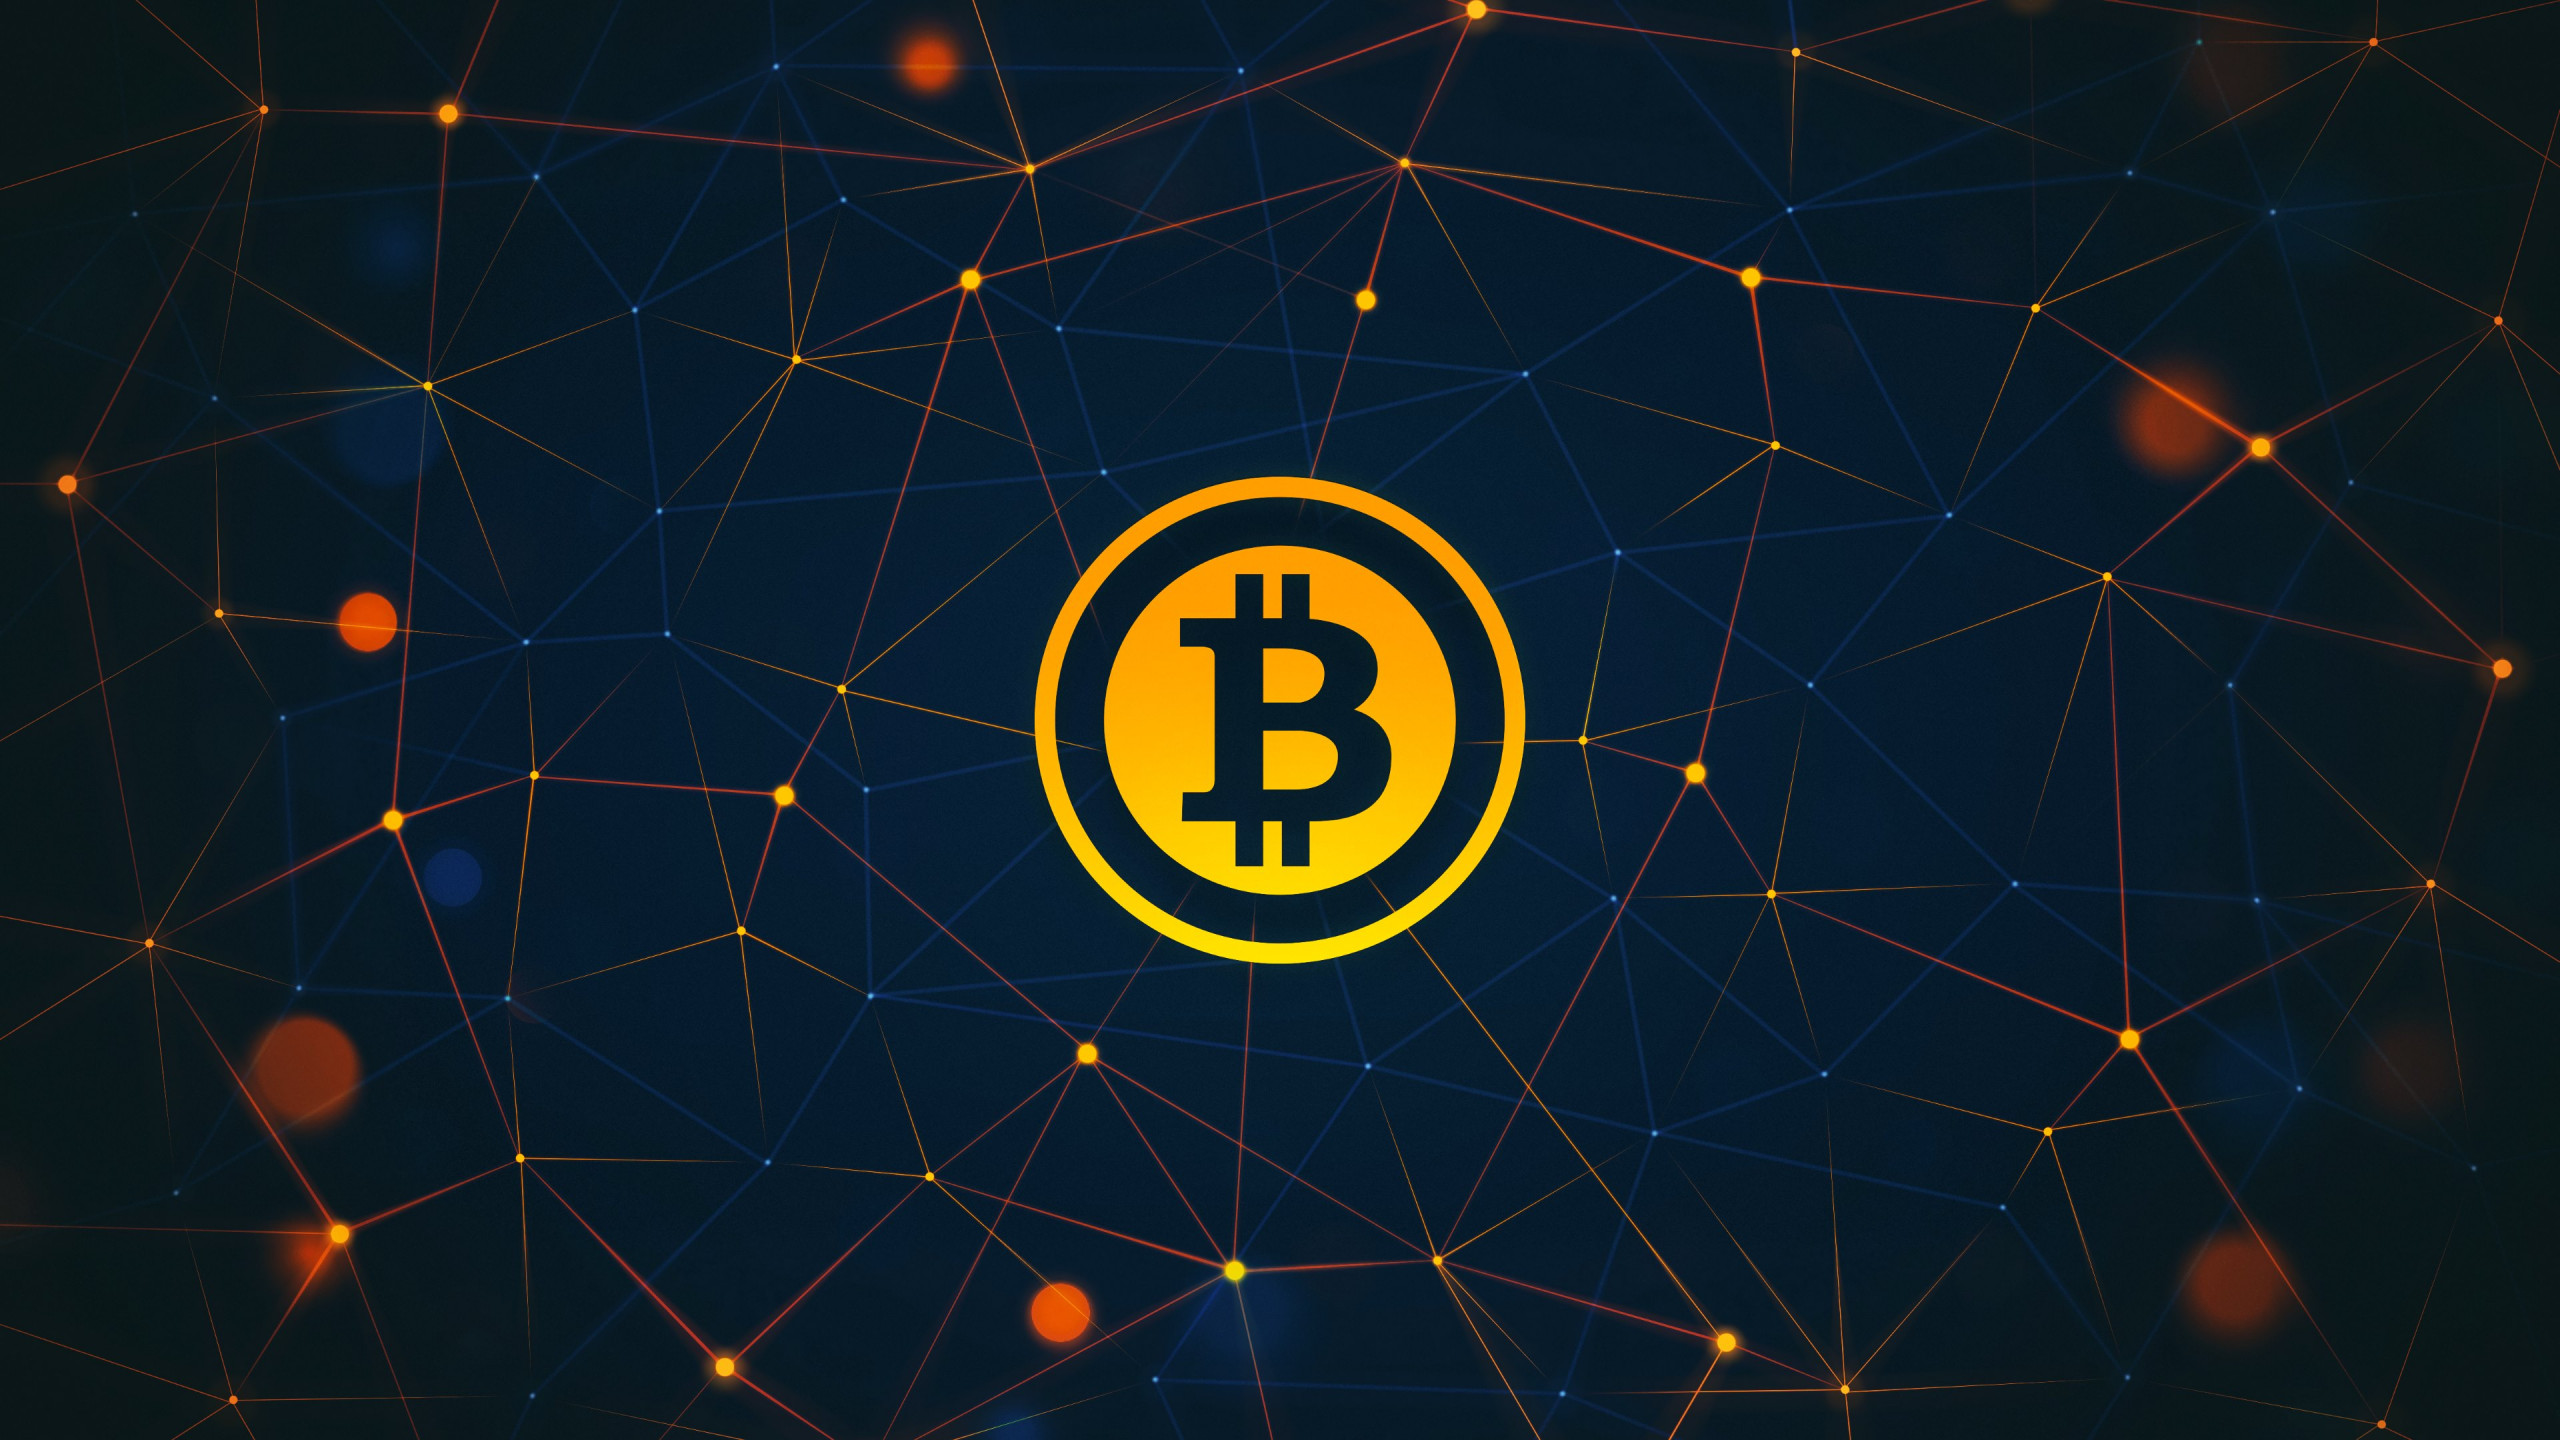 Bitcoin logo wallpaper 2560x1440